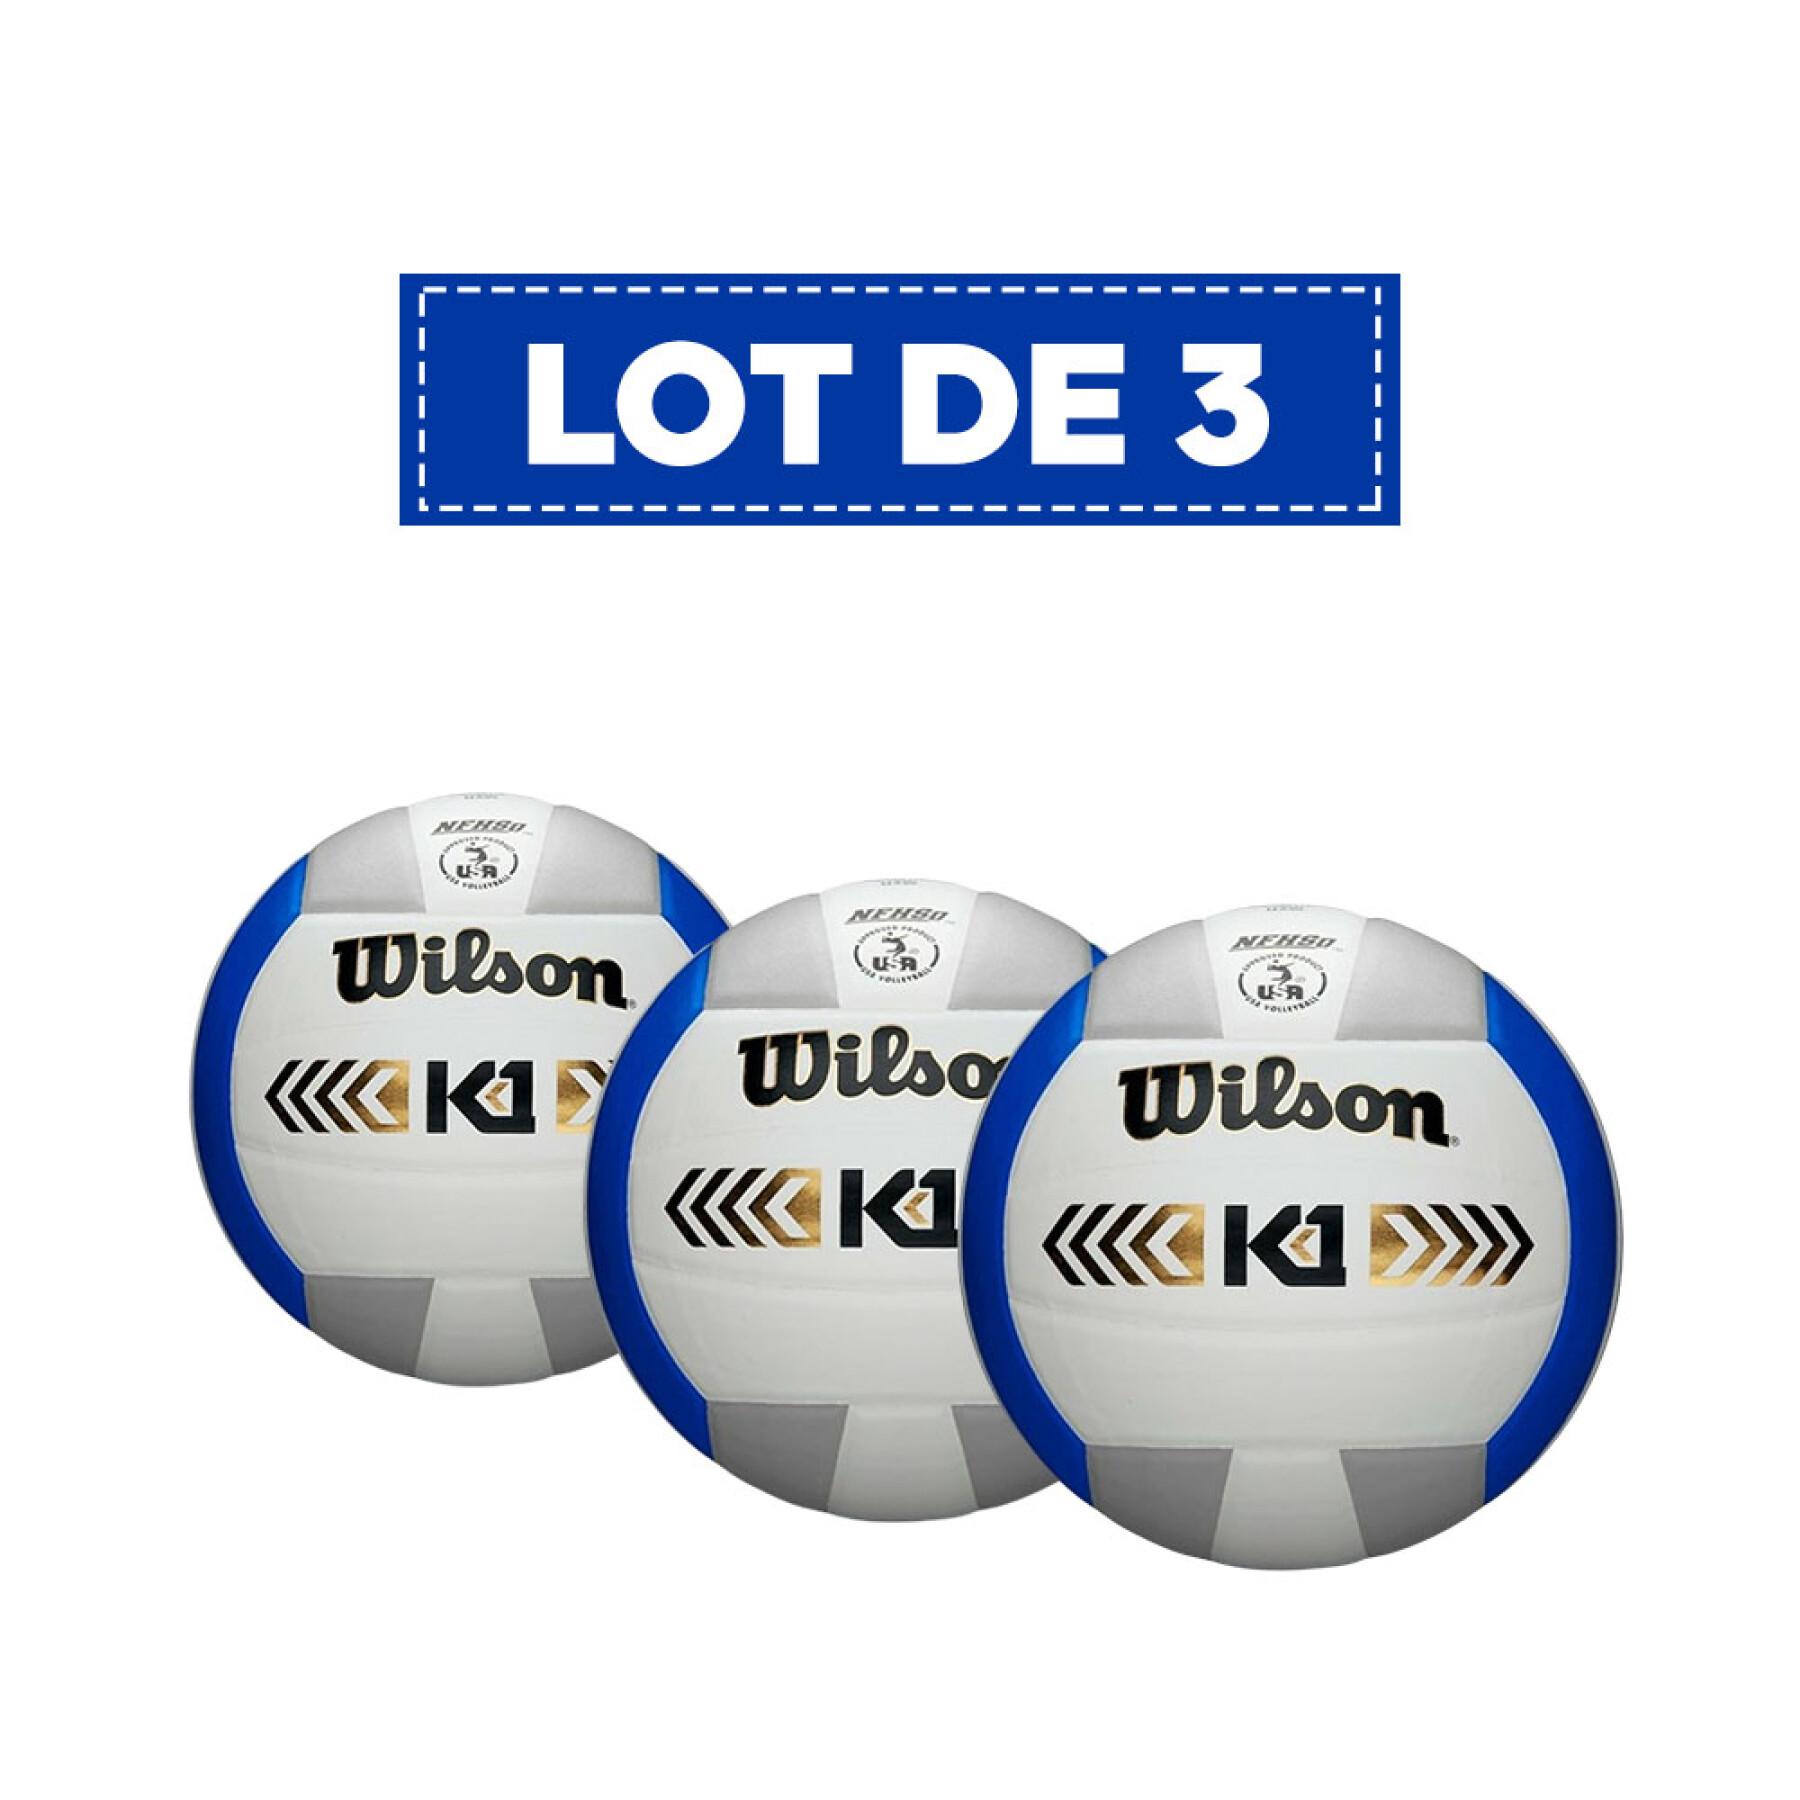 Lot de 3 Ballons volleyball Wilson K1 Gold [Taille 5]